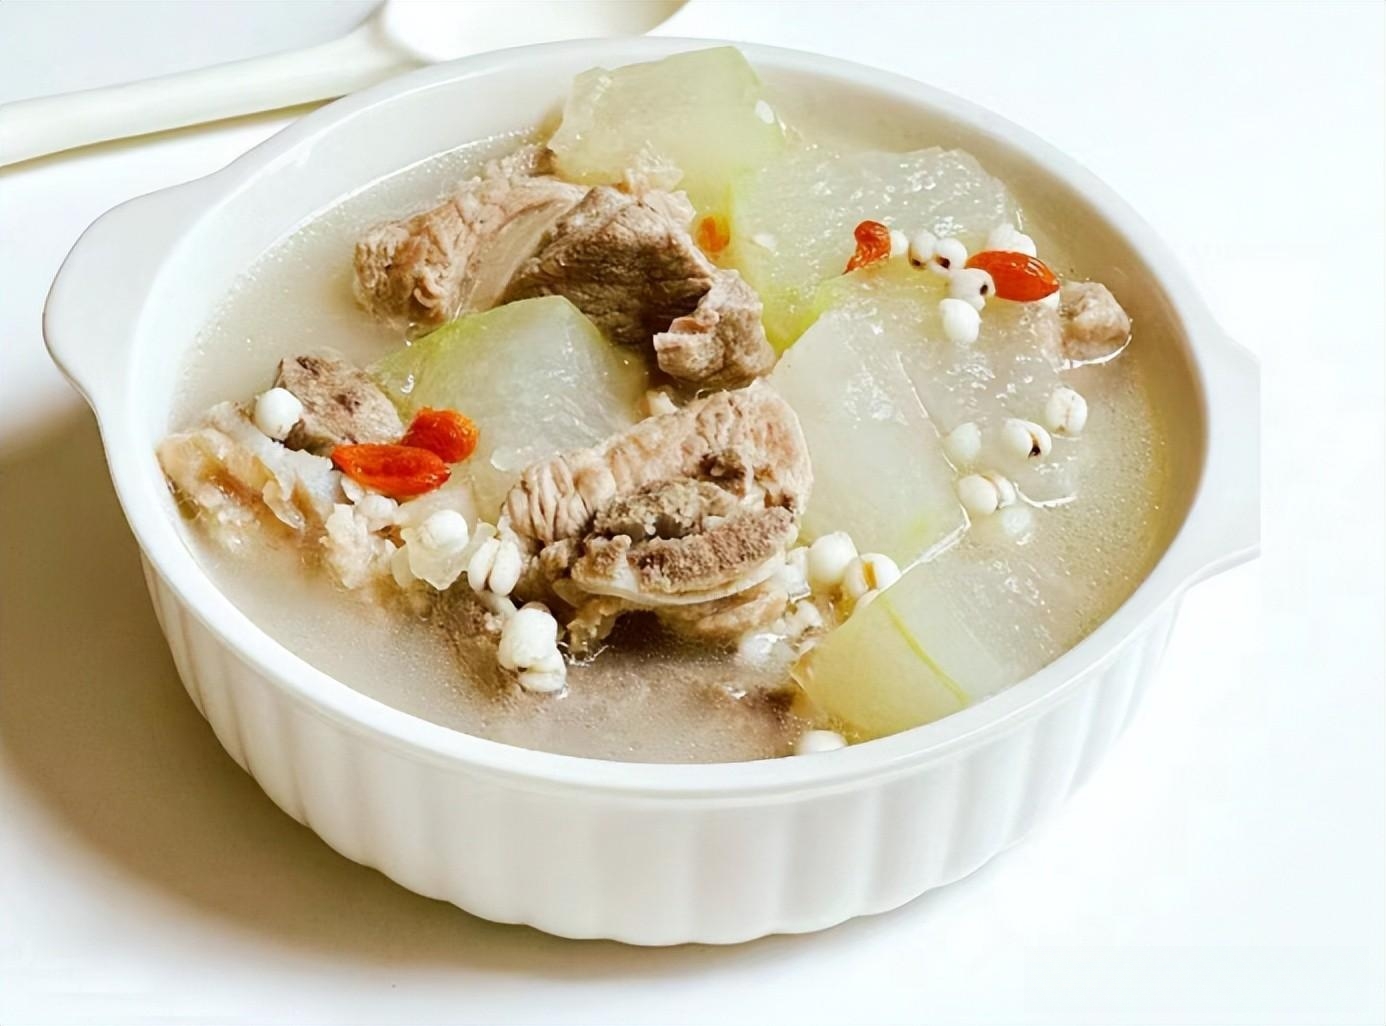 冬瓜薏米排骨汤,冬瓜薏米排骨汤的家常做法 - 美食杰冬瓜薏米排骨汤做法大全